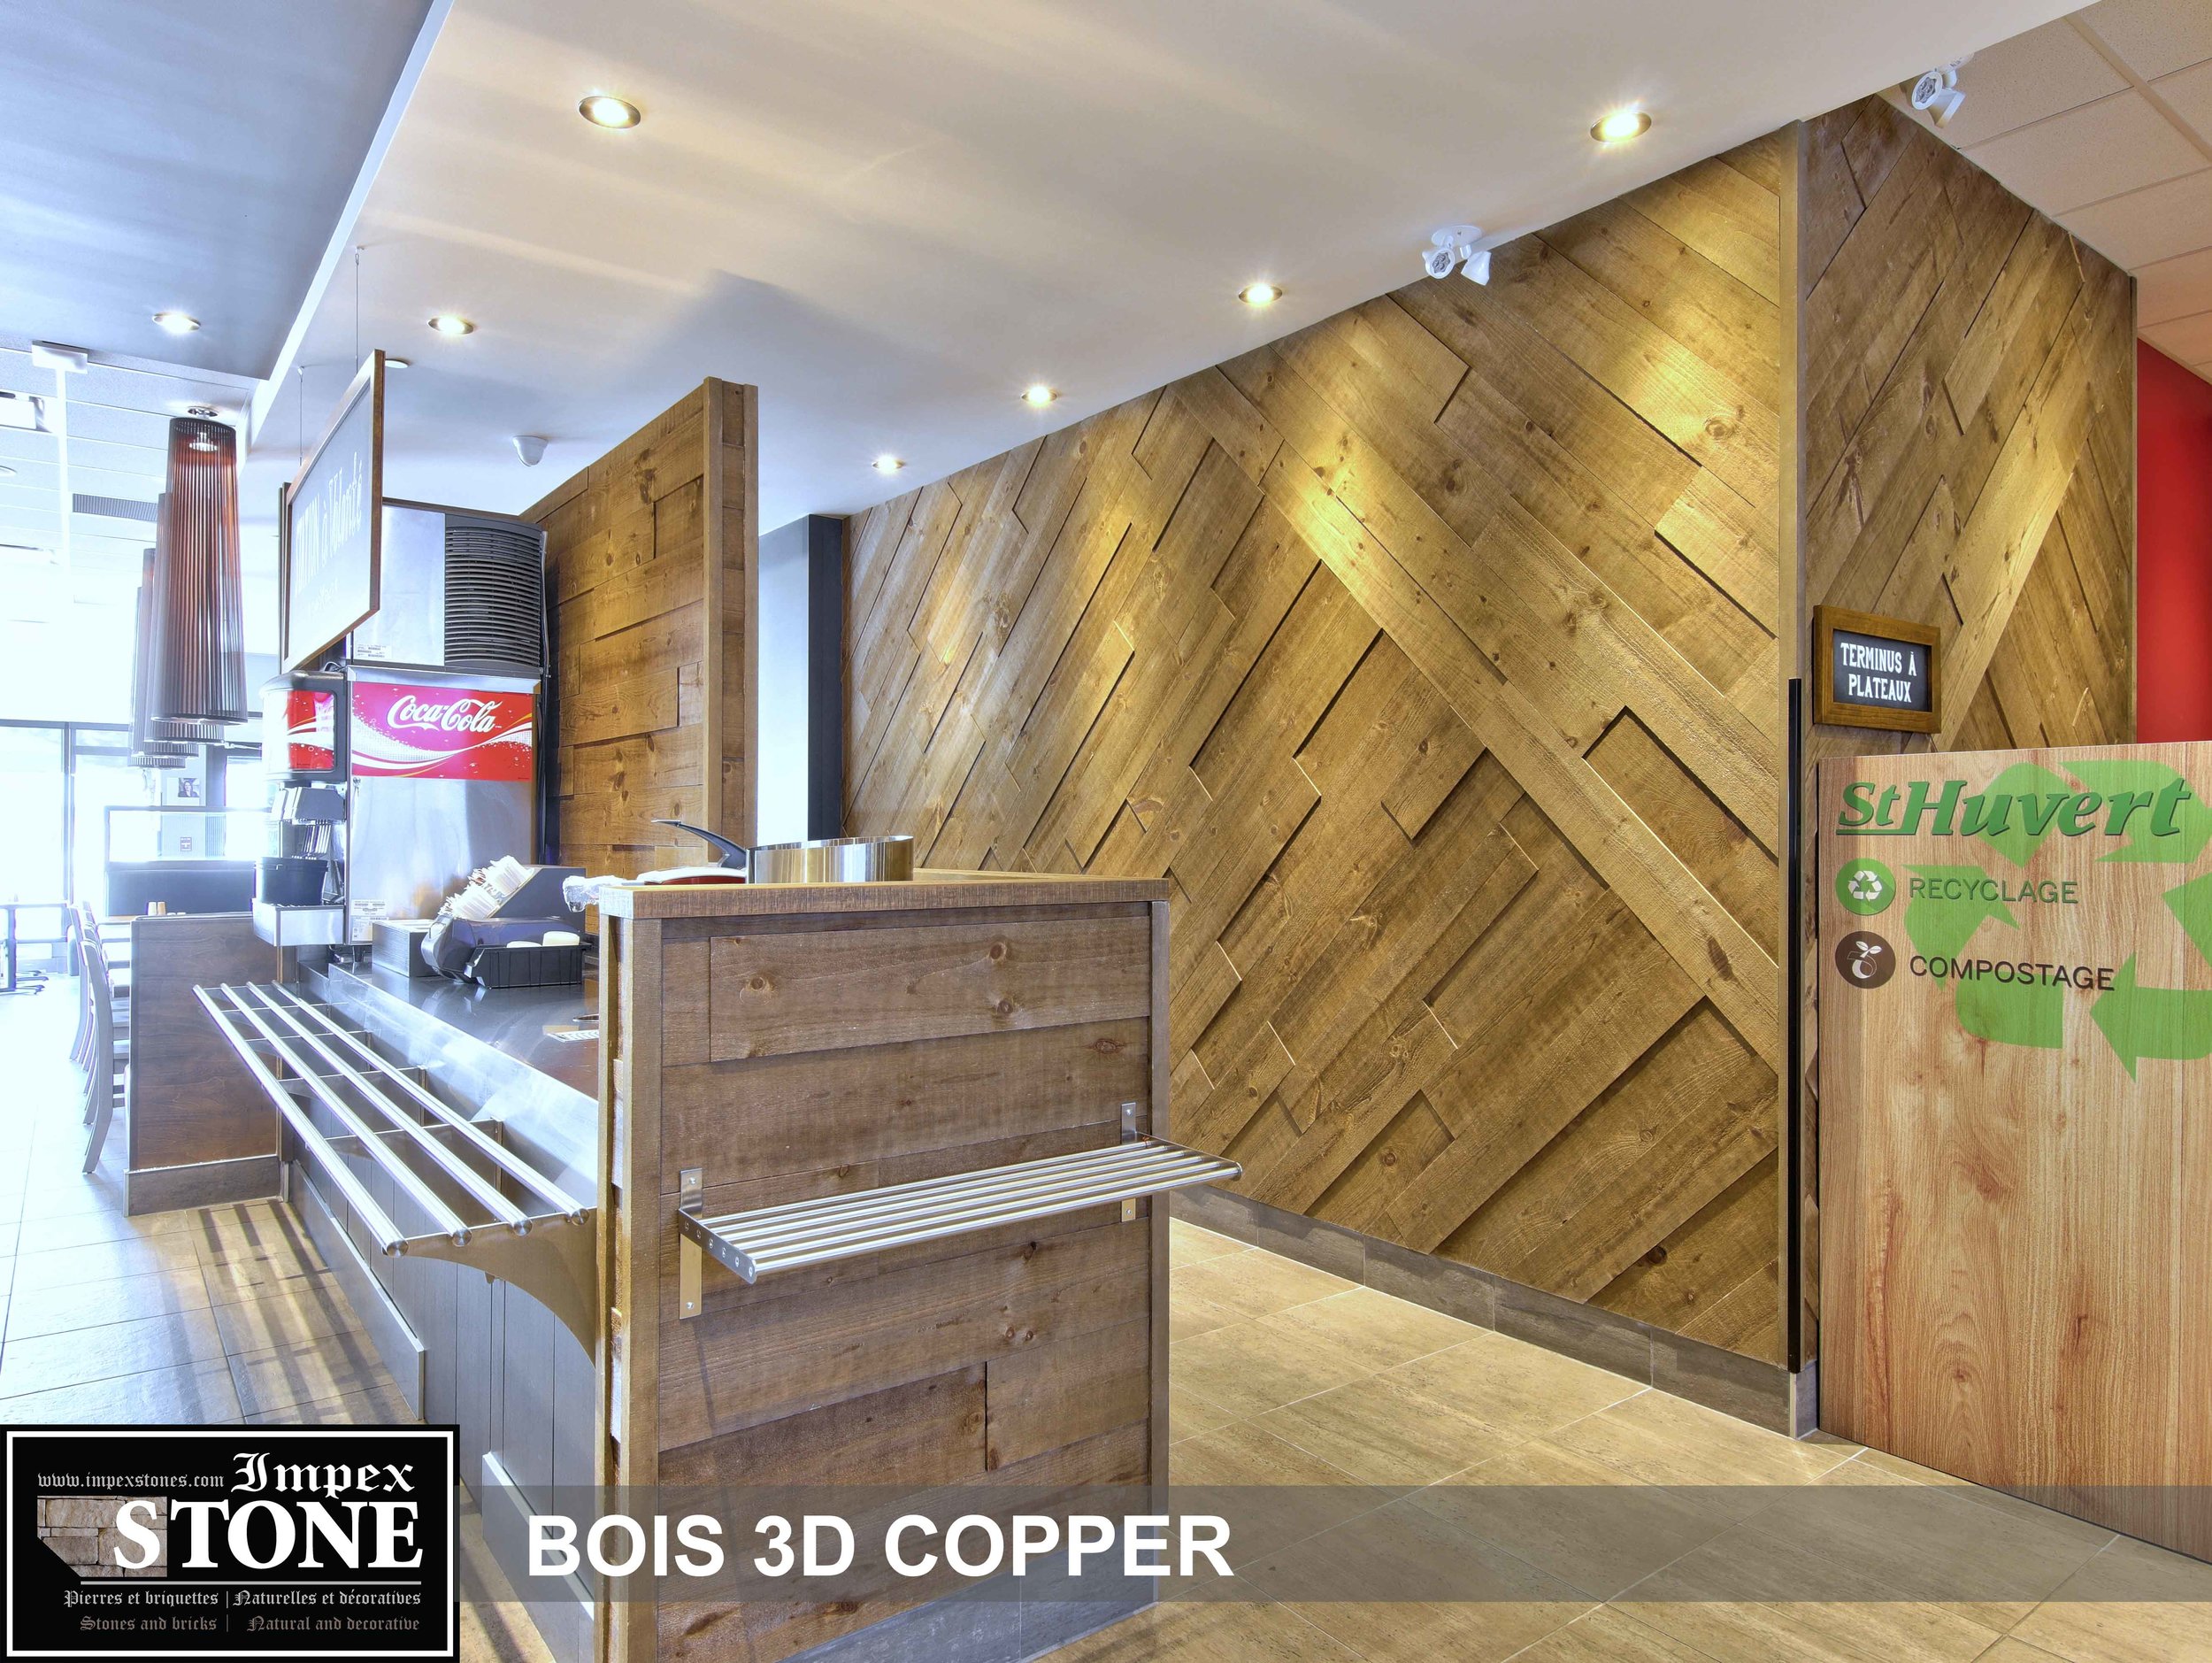 Bois 3D-Copper-sthub.jpg